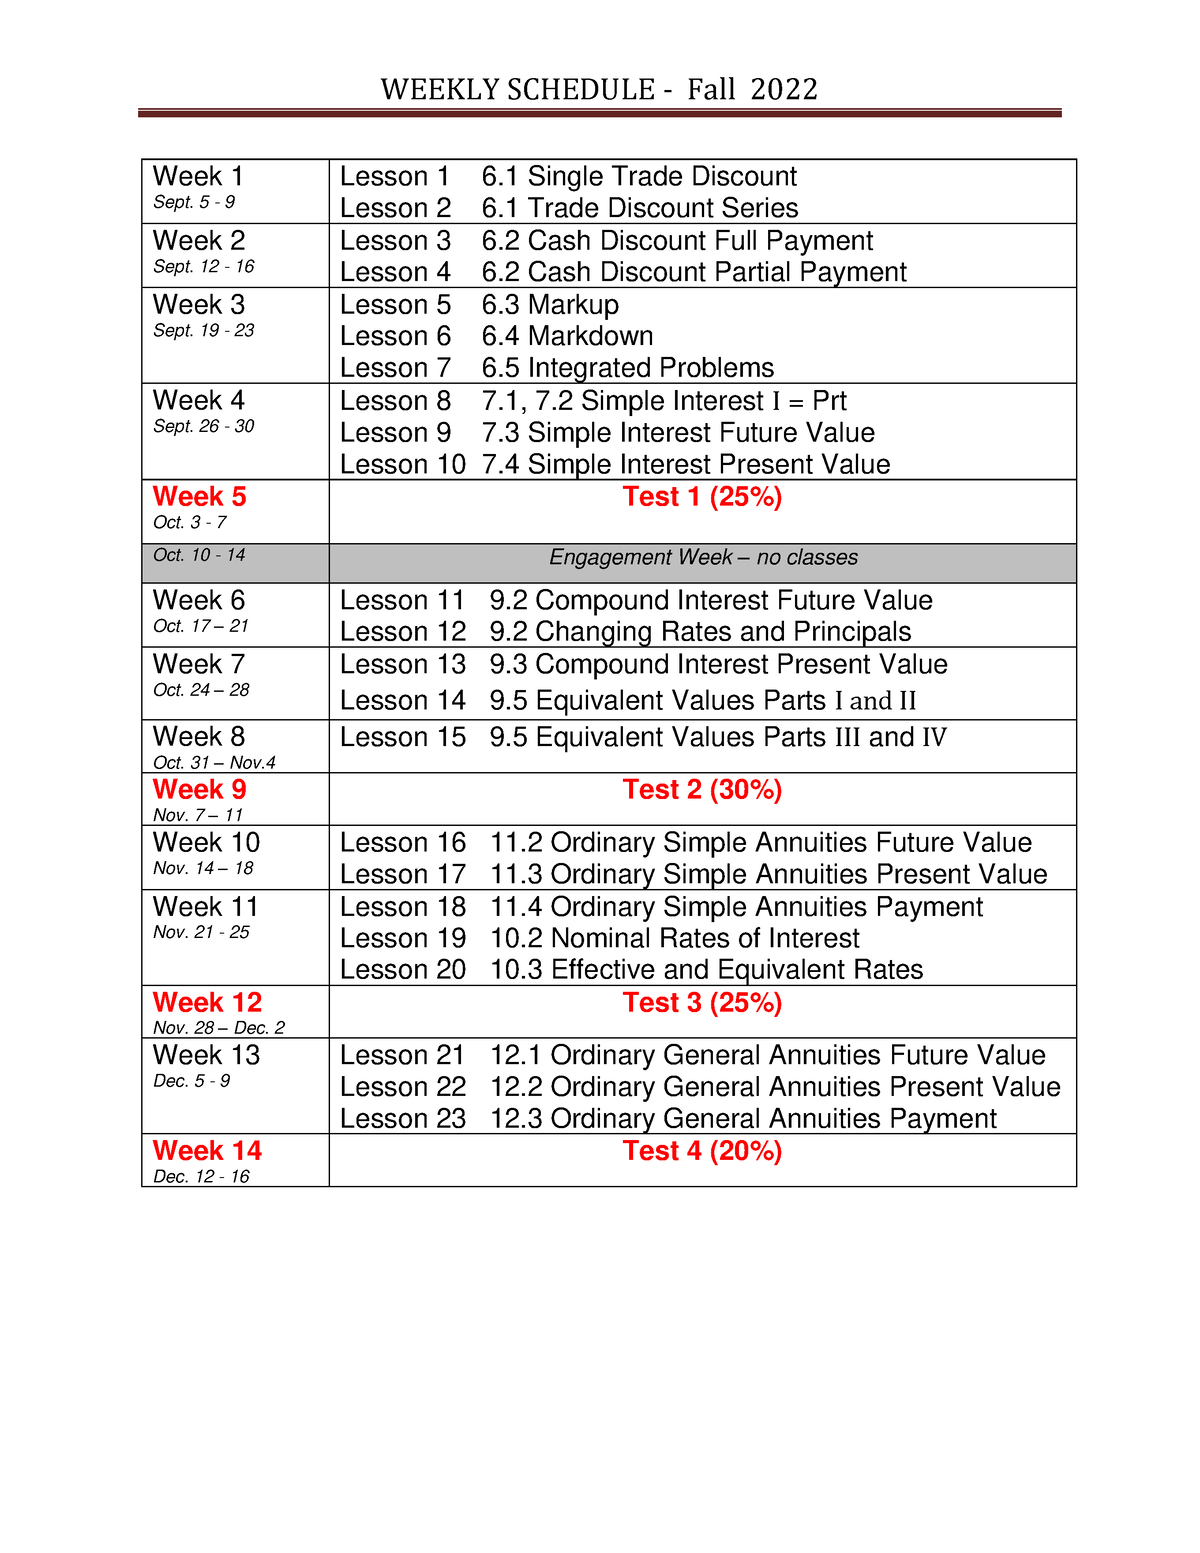 math119-weekly-schedule-fall-2022-weekly-schedule-fall-2022-week-1-sept-5-9-lesson-1-6